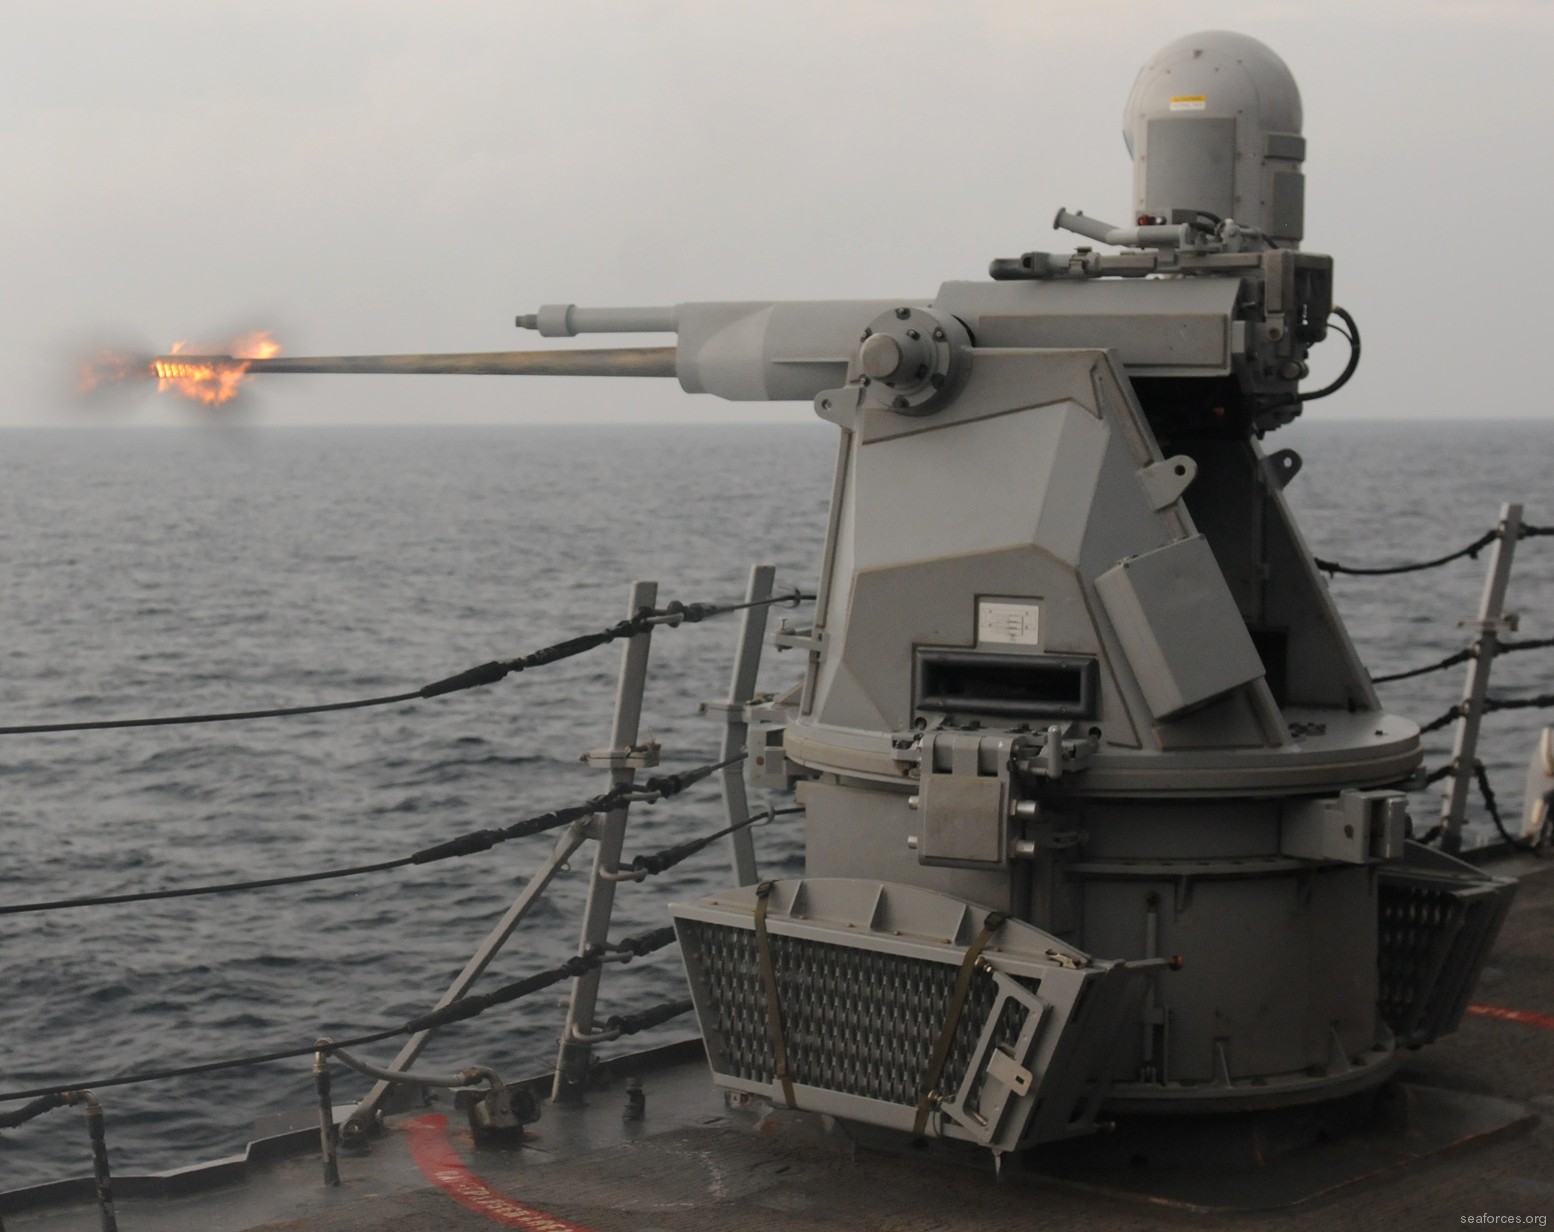 ddg-57 uss mitscher guided missile destroyer us navy 34 mk-38 mod.2 machine gun system mgs